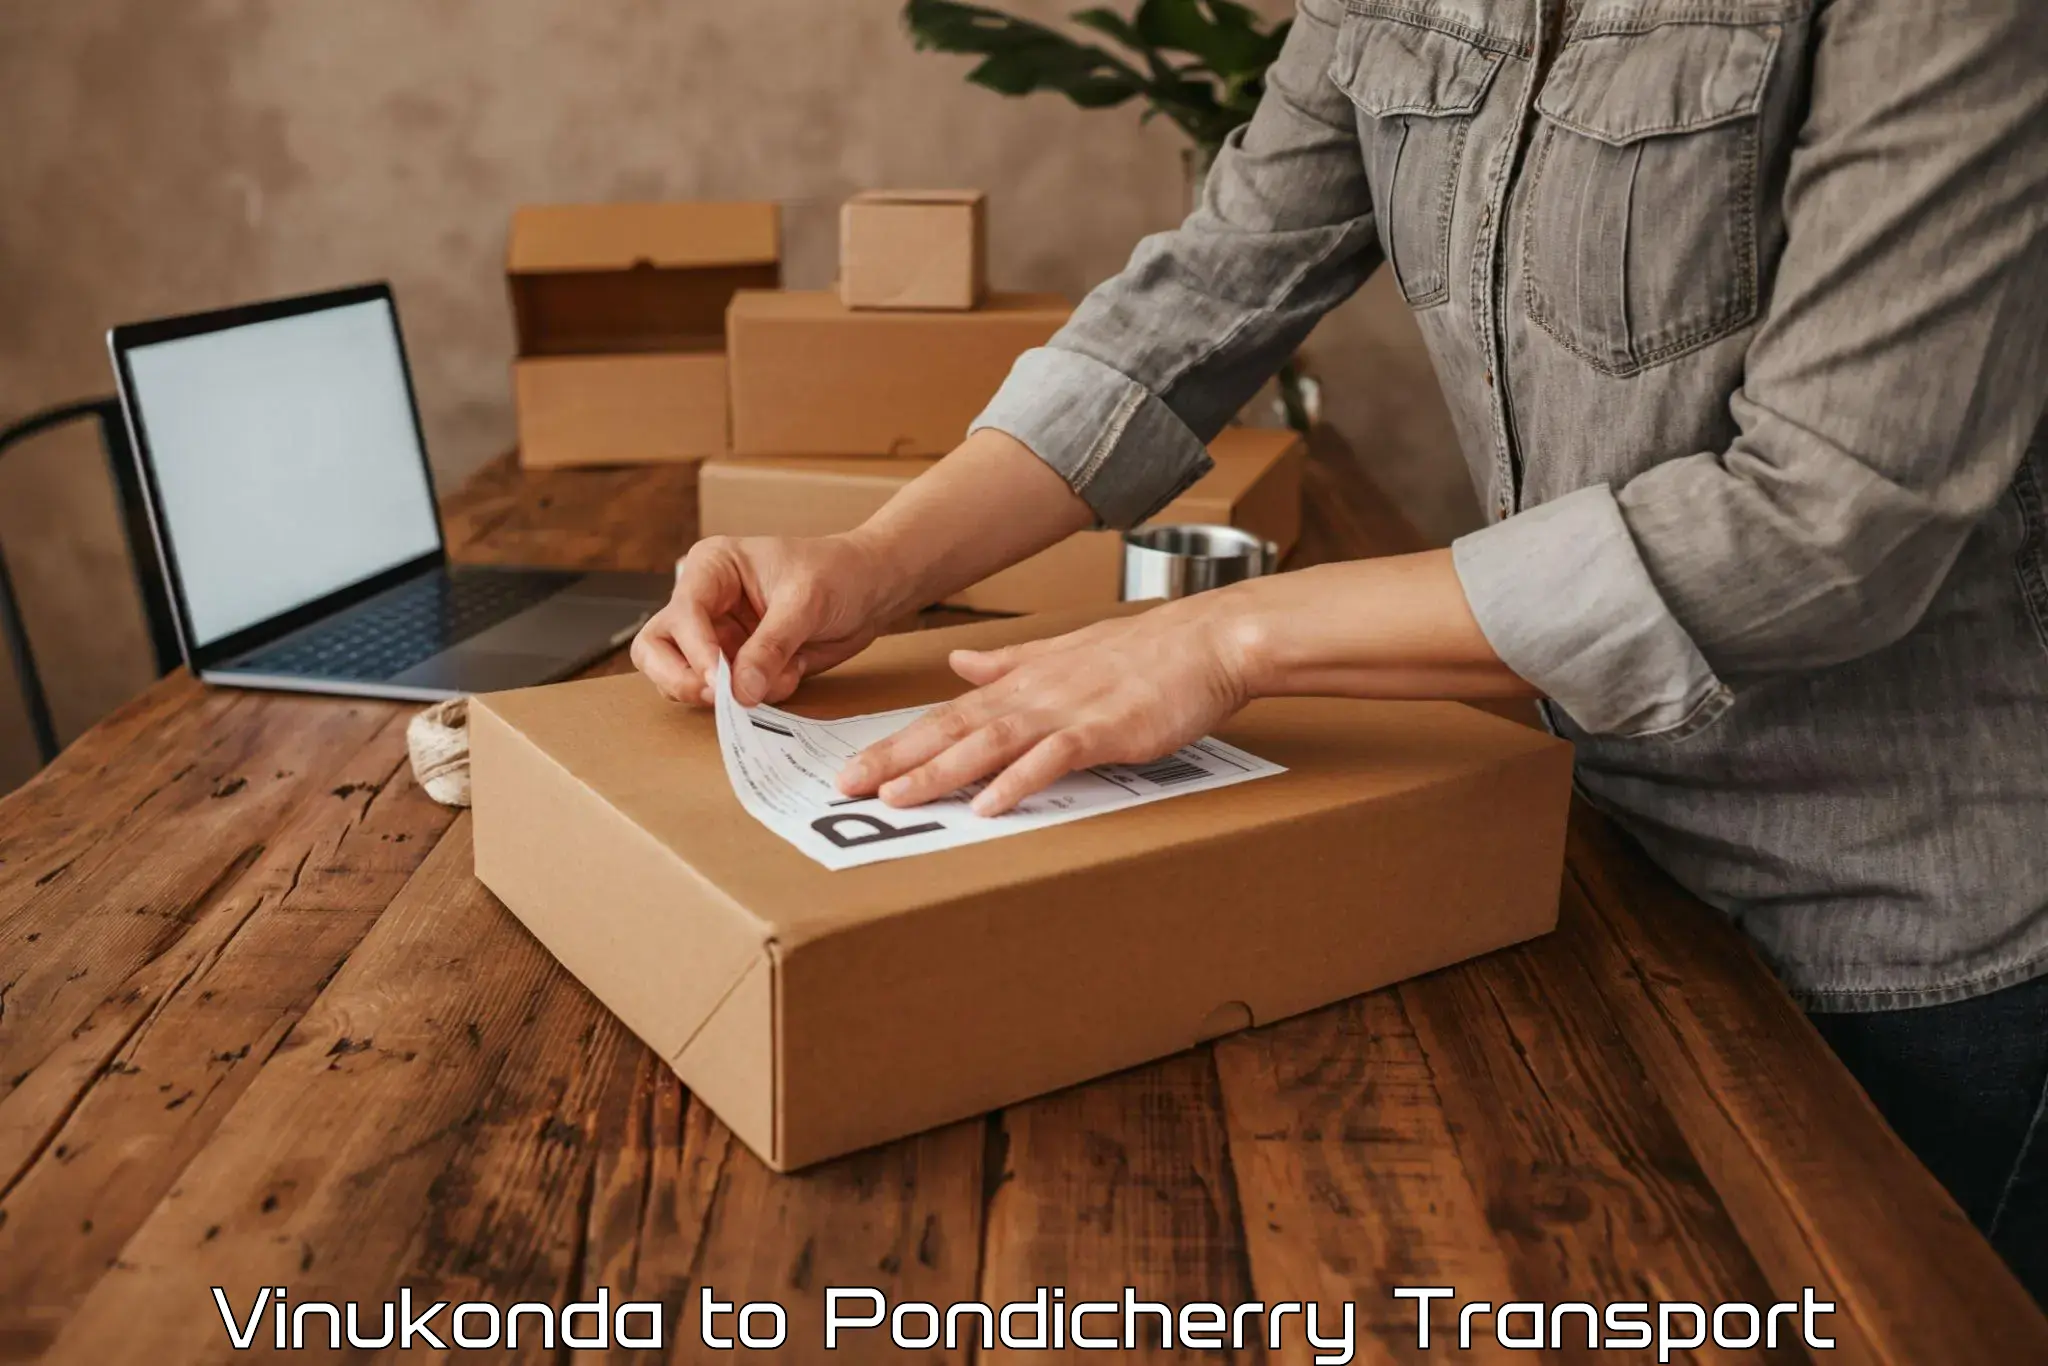 Land transport services Vinukonda to Pondicherry University